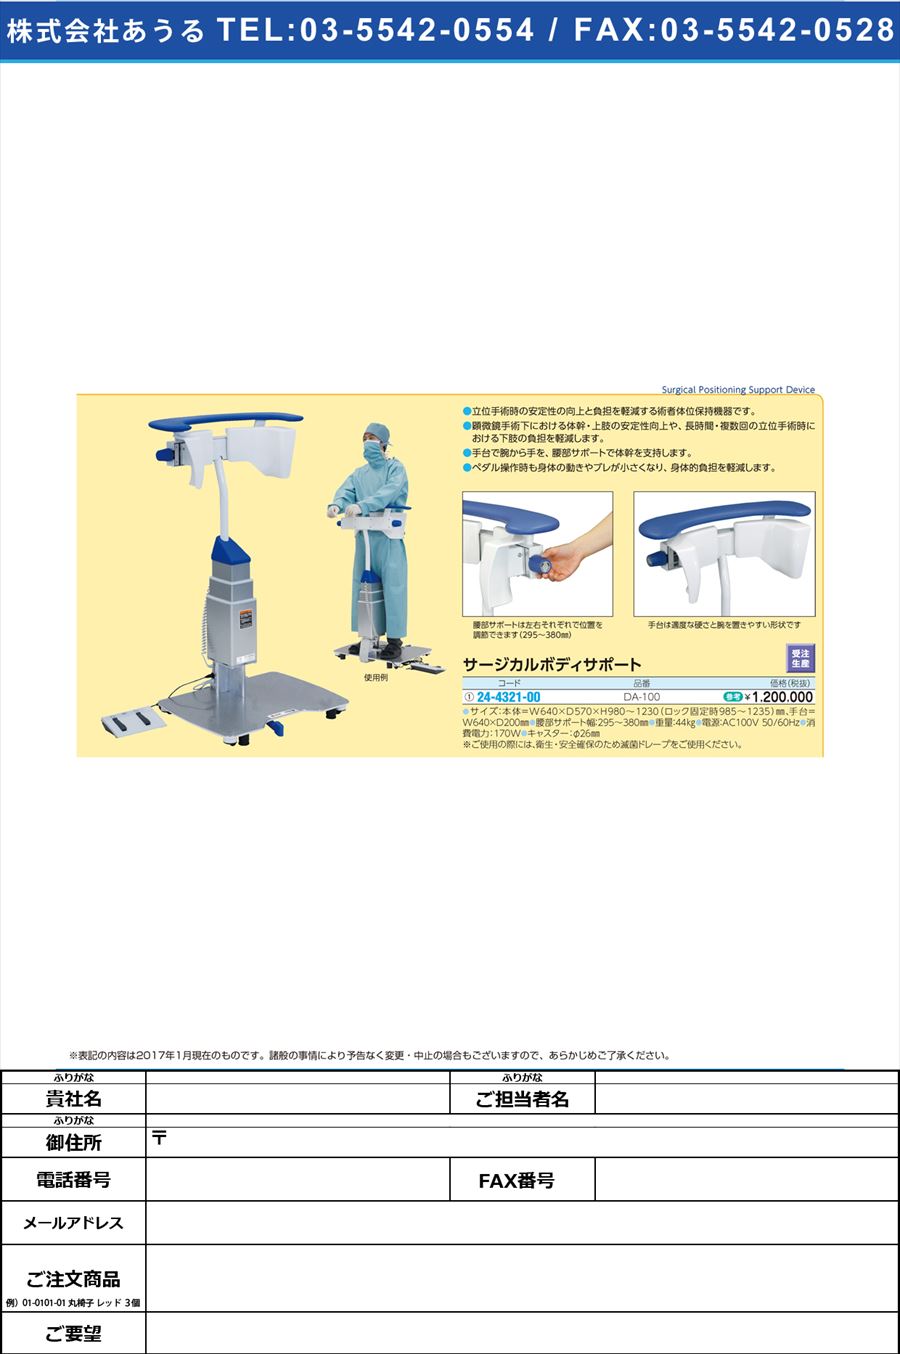 サージカルボディサポート ｻｰｼﾞｶﾙﾎﾞﾃﾞｨｻﾎﾟｰﾄ DA-100(24-4321-00)【1台単位】【2017年カタログ商品】